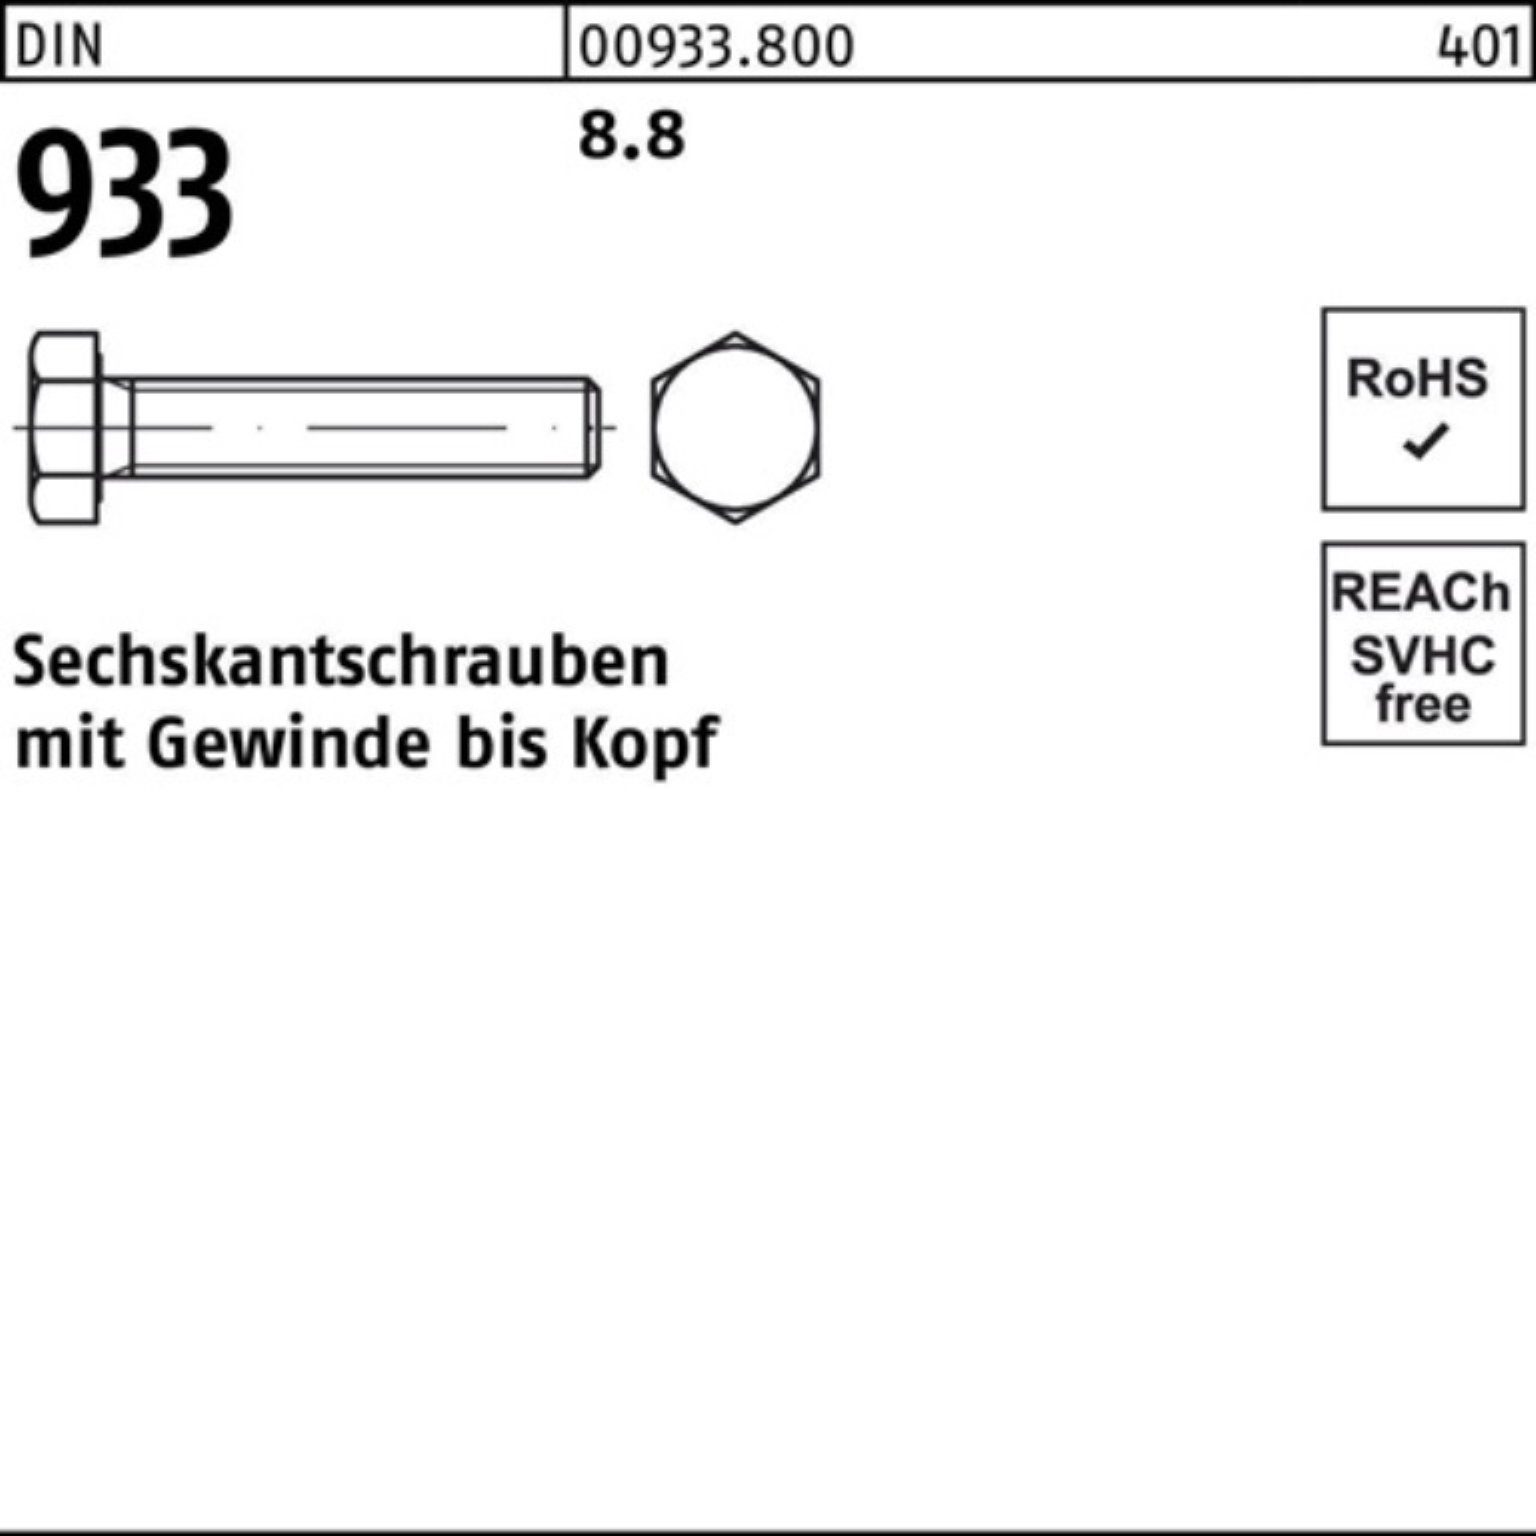 Reyher Sechskantschraube Sechskantschraube 1 8 M42x VG Pack 50 933 Stück 933 100er DIN DIN 8.8